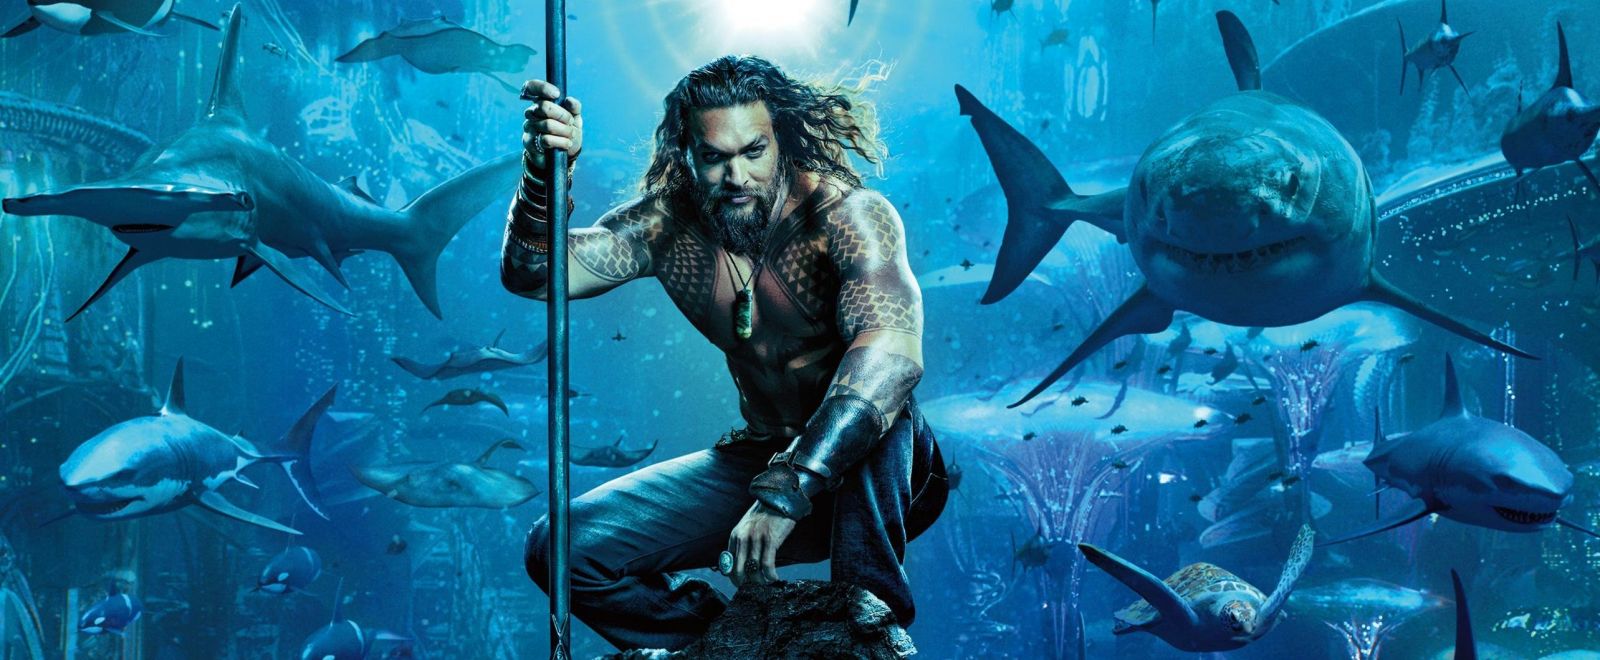 Aquaman je najúspešnejším filmom z DCEU! Tržbami už pomaly mieri k hranici jednej miliardy